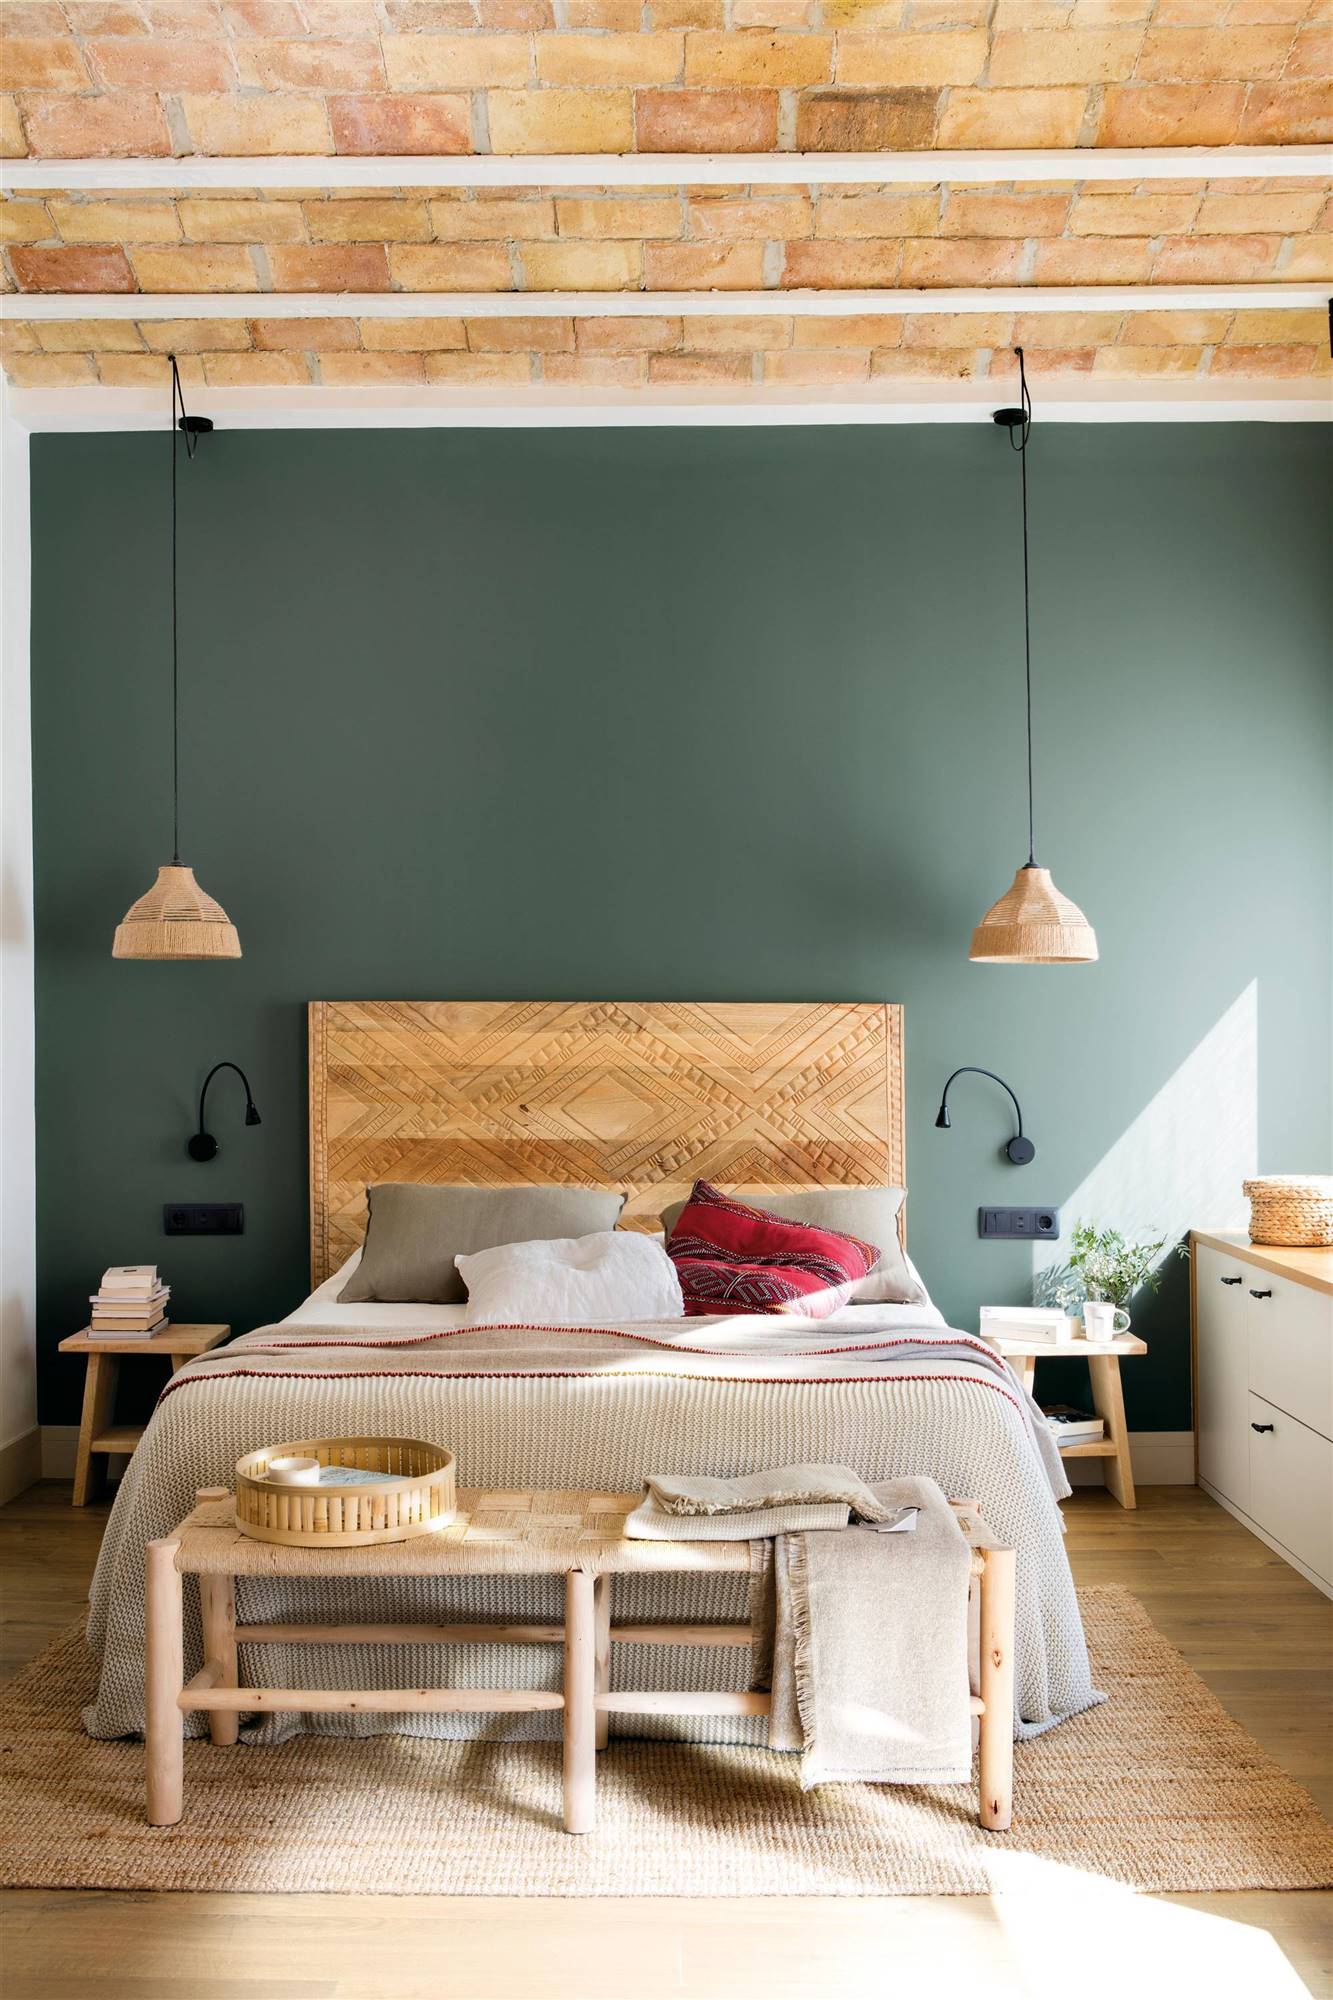  Dormitorio con cabecero de madera tallada y pared pintada en verde.